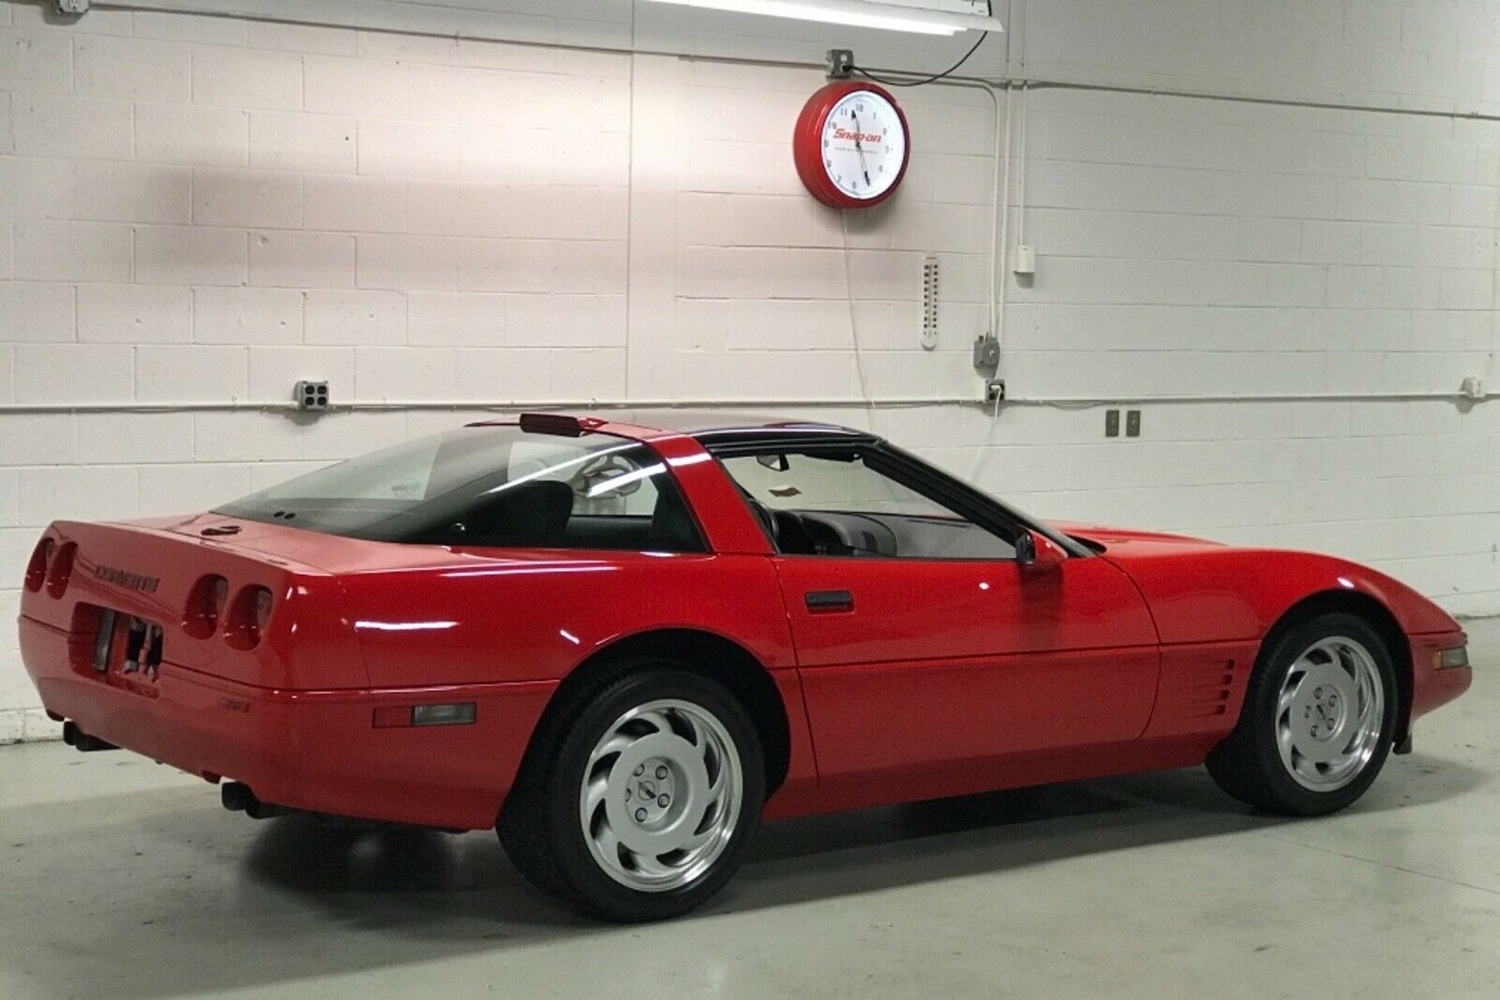 30 évig várt az első tulajdonosra ez a piros Corvette 1